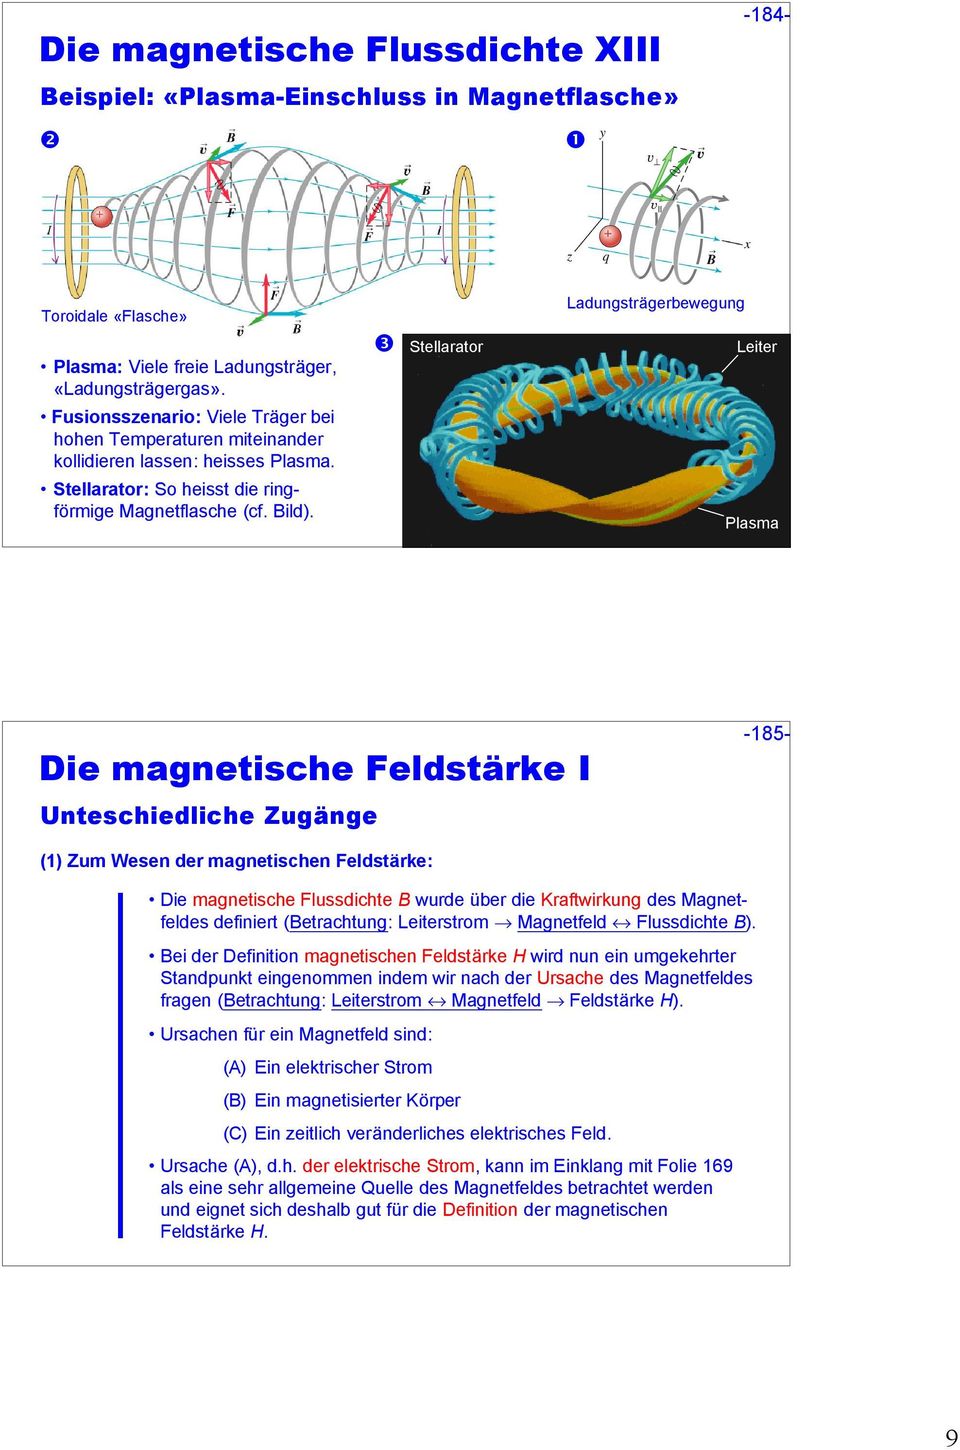 Stellarator Ladungsträgerbewegung Leter Plasma De magnetsche Feldstärke I Unteschedlche Zugänge -185- (1) Zum Wesen der magnetschen Feldstärke: De magnetsche Flussdchte wurde über de Kraftwrkung des